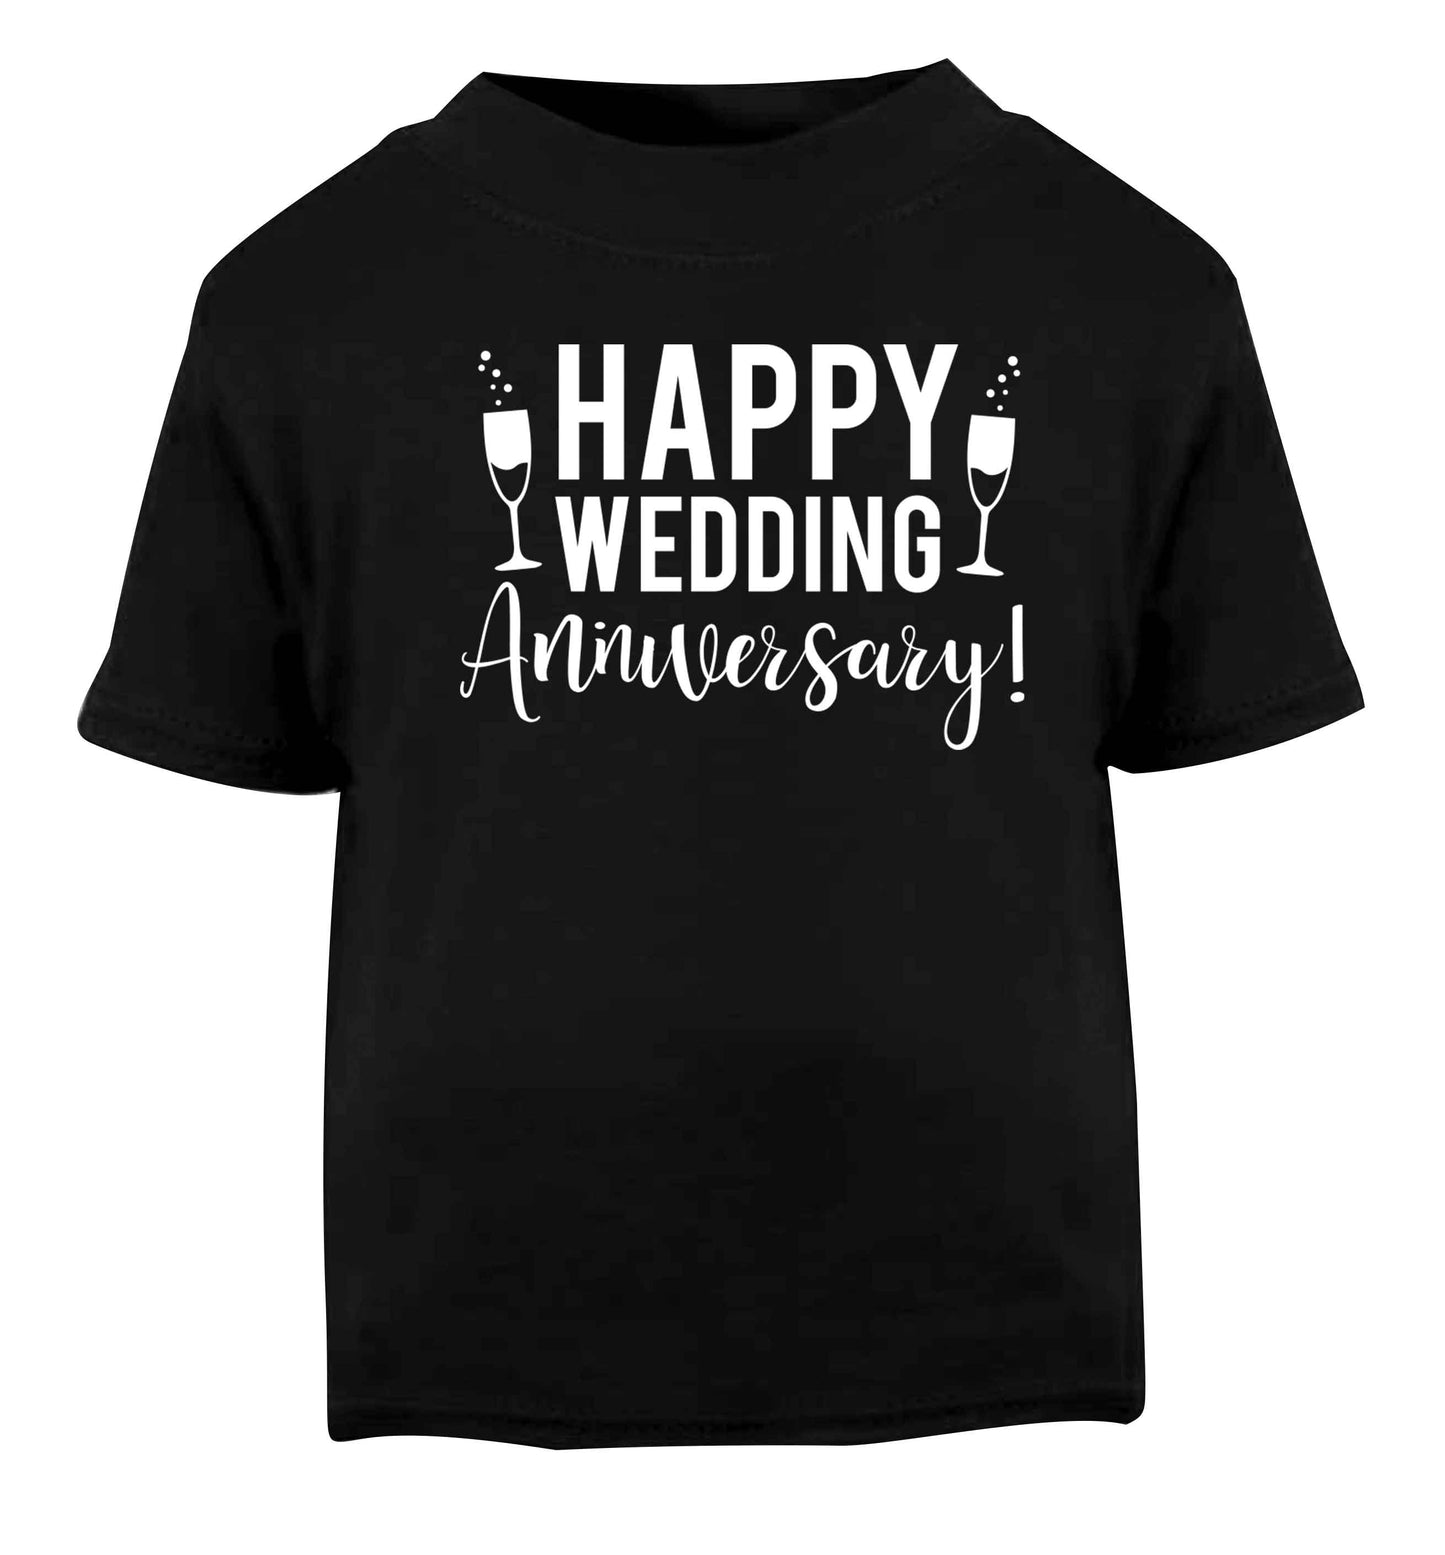 Happy wedding anniversary! Black baby toddler Tshirt 2 years